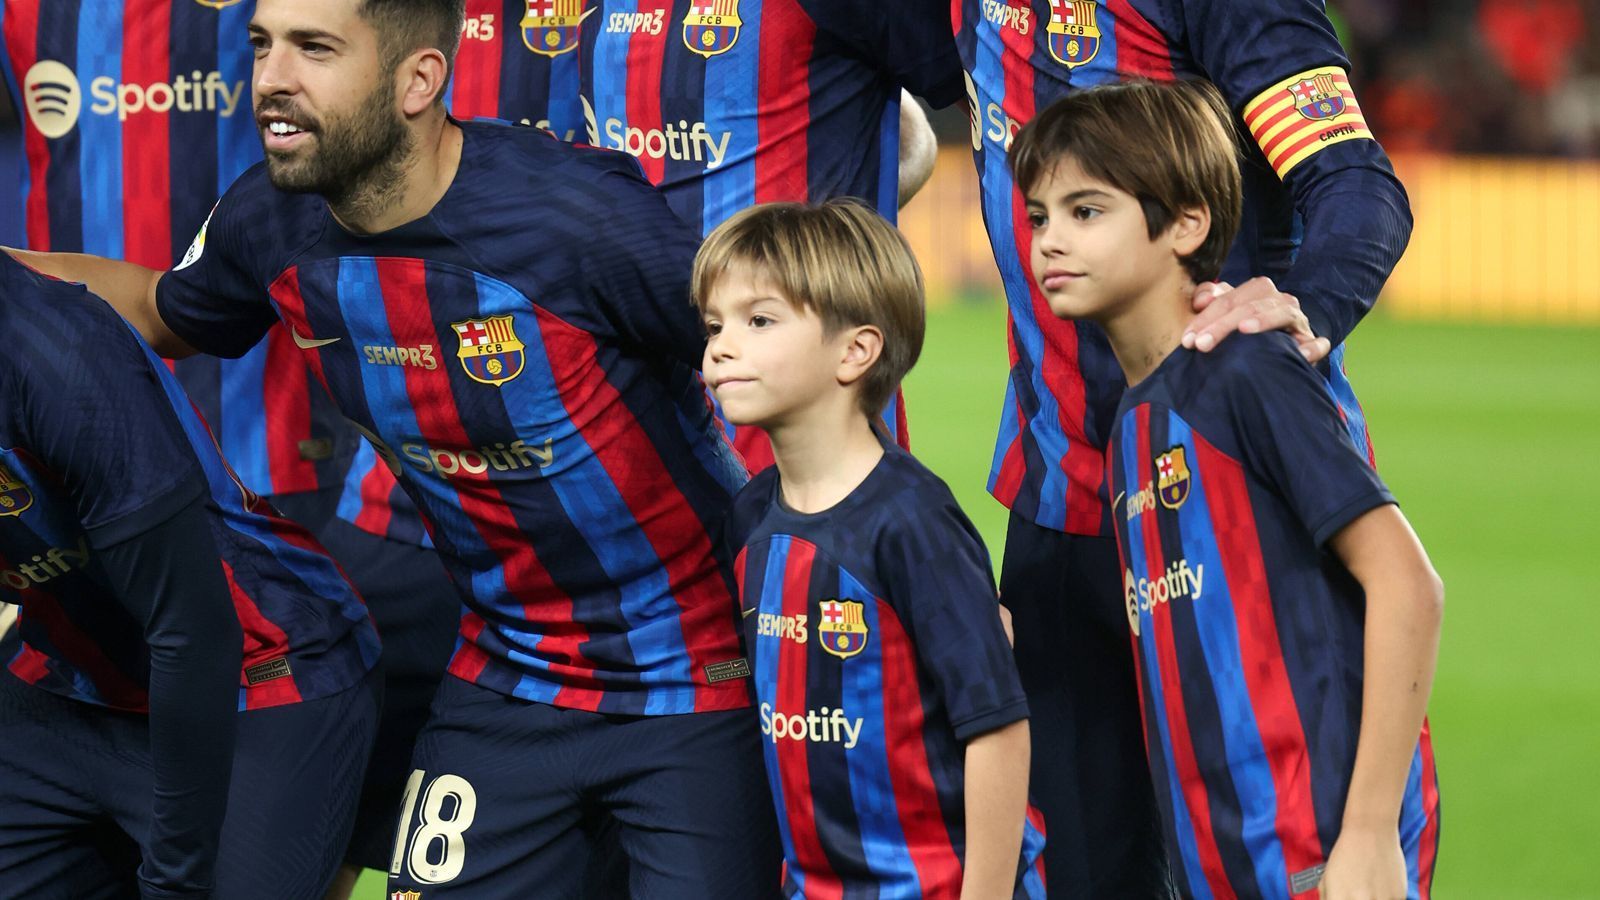 
                <strong>Gerard Piques Söhne auf dem Mannschaftsfoto</strong><br>
                Beim Mannschaftsfoto hat Barca 13 Kicker auf dem Feld: Gerard Piques Söhne Sasha und Milan kommen mit ihrem Vater auf den Platz.
              